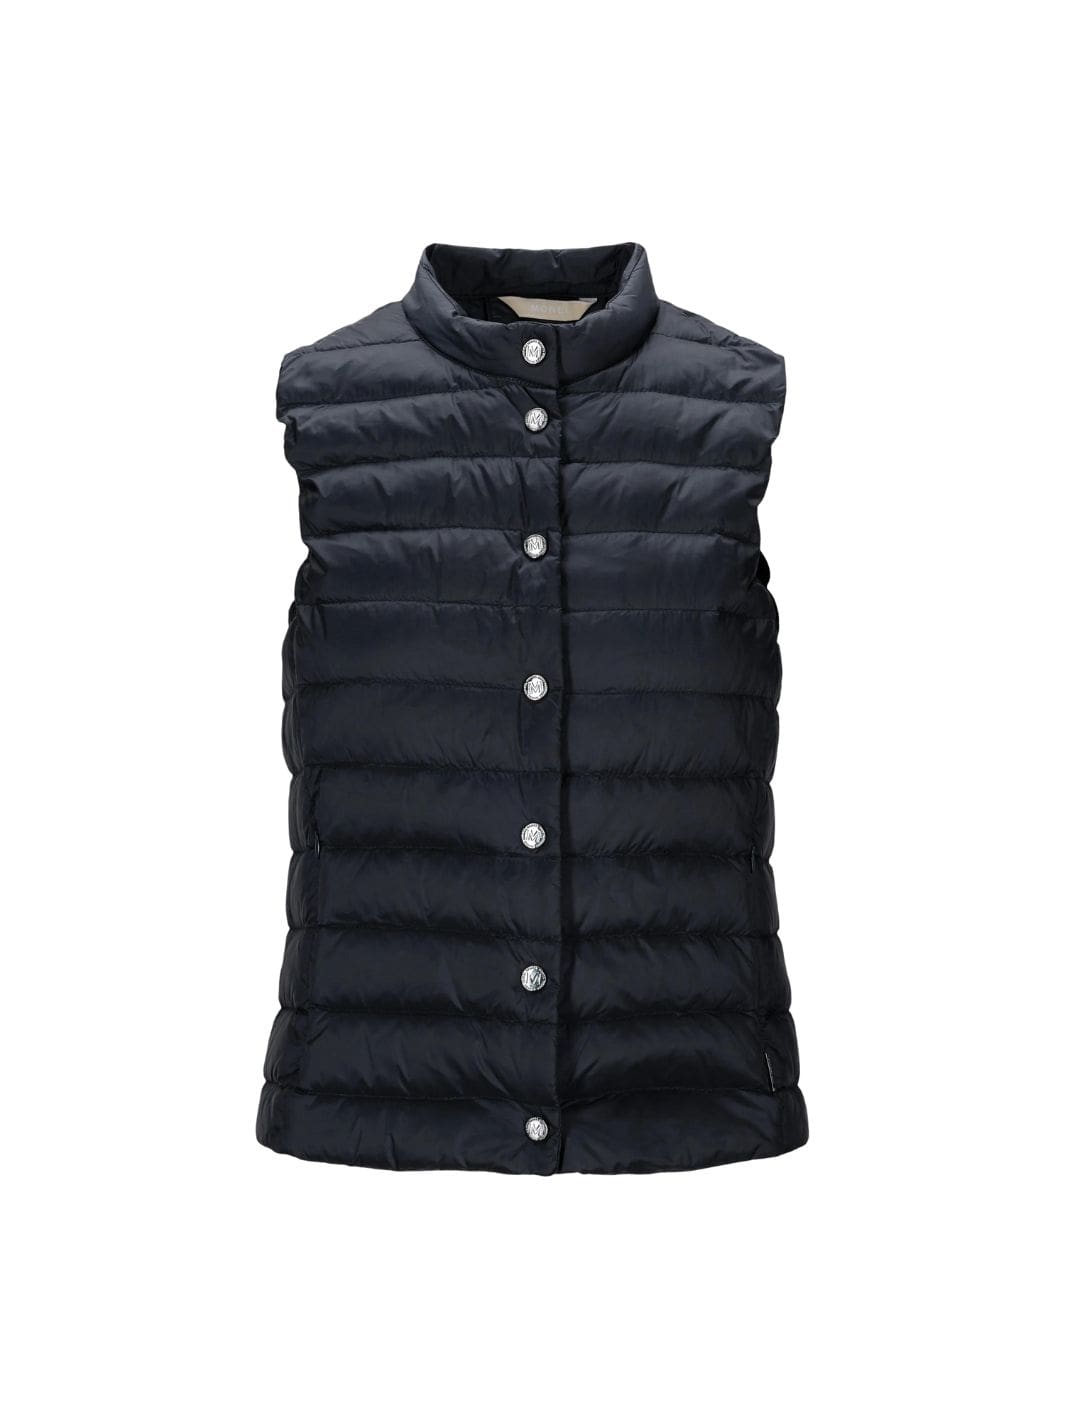 Monel Outerwear Vest | Lola Vest Navy